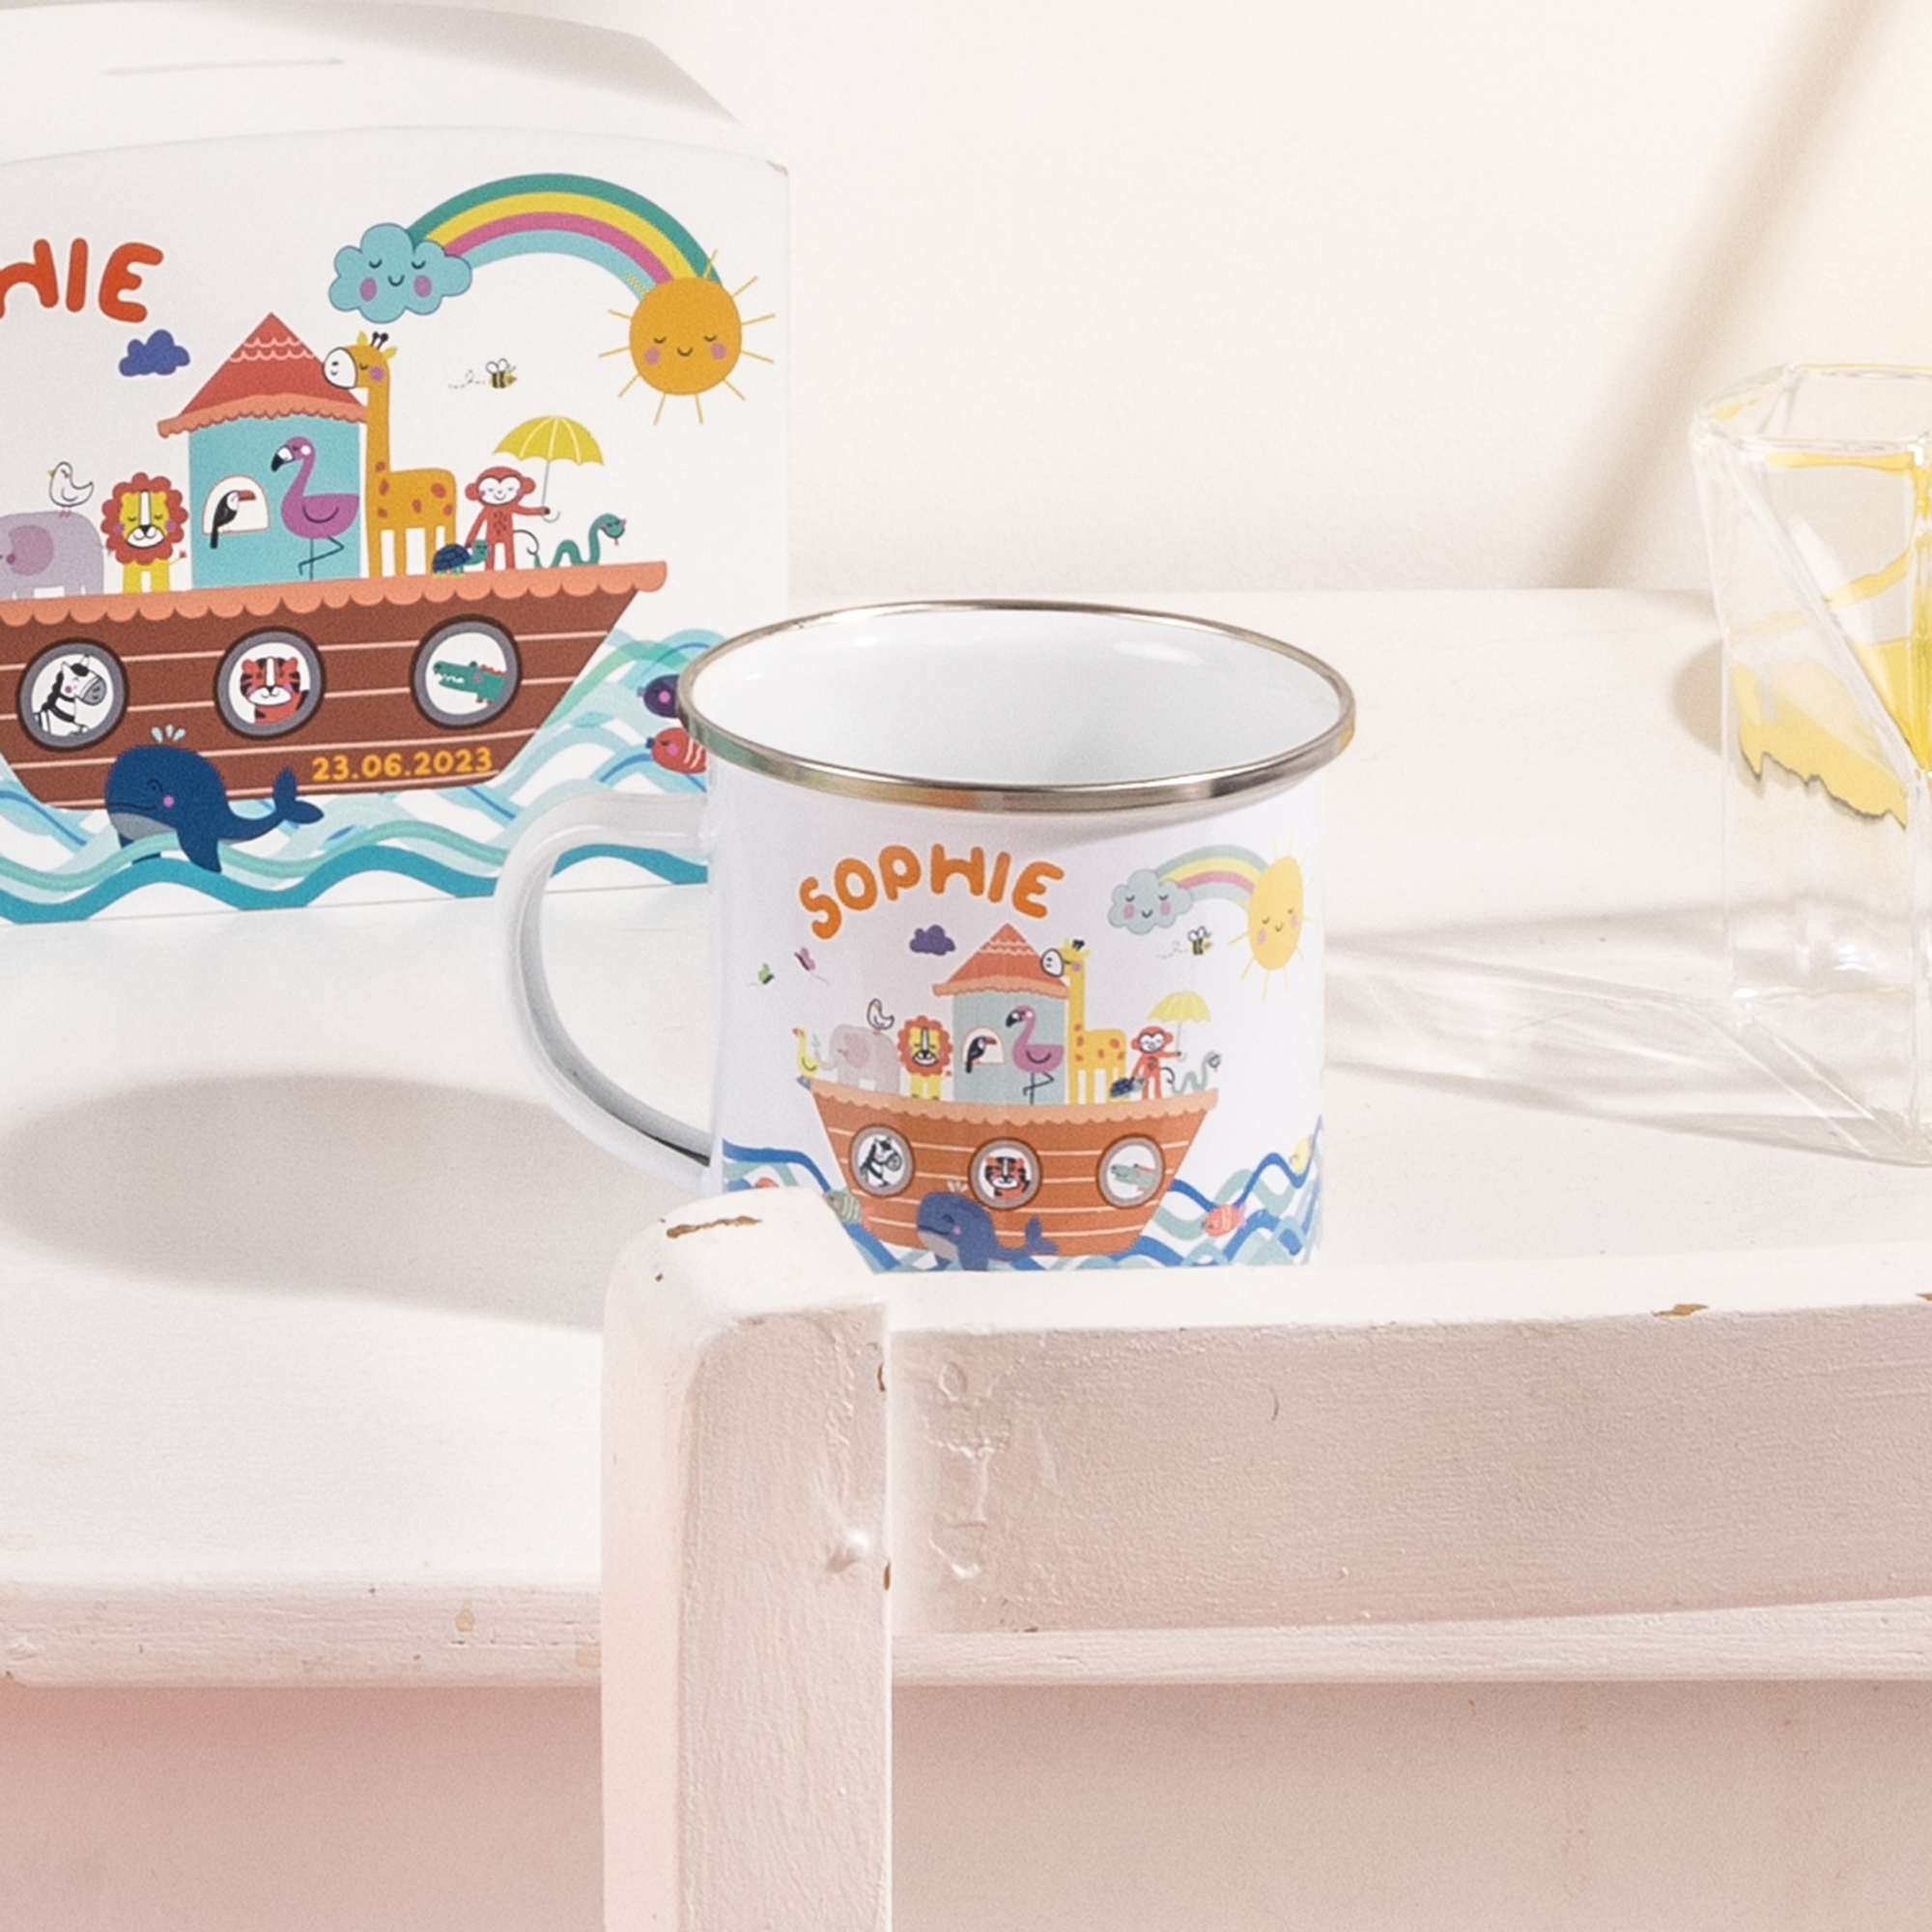 Personalised Children's Noah's Ark Themed Enamel Mug